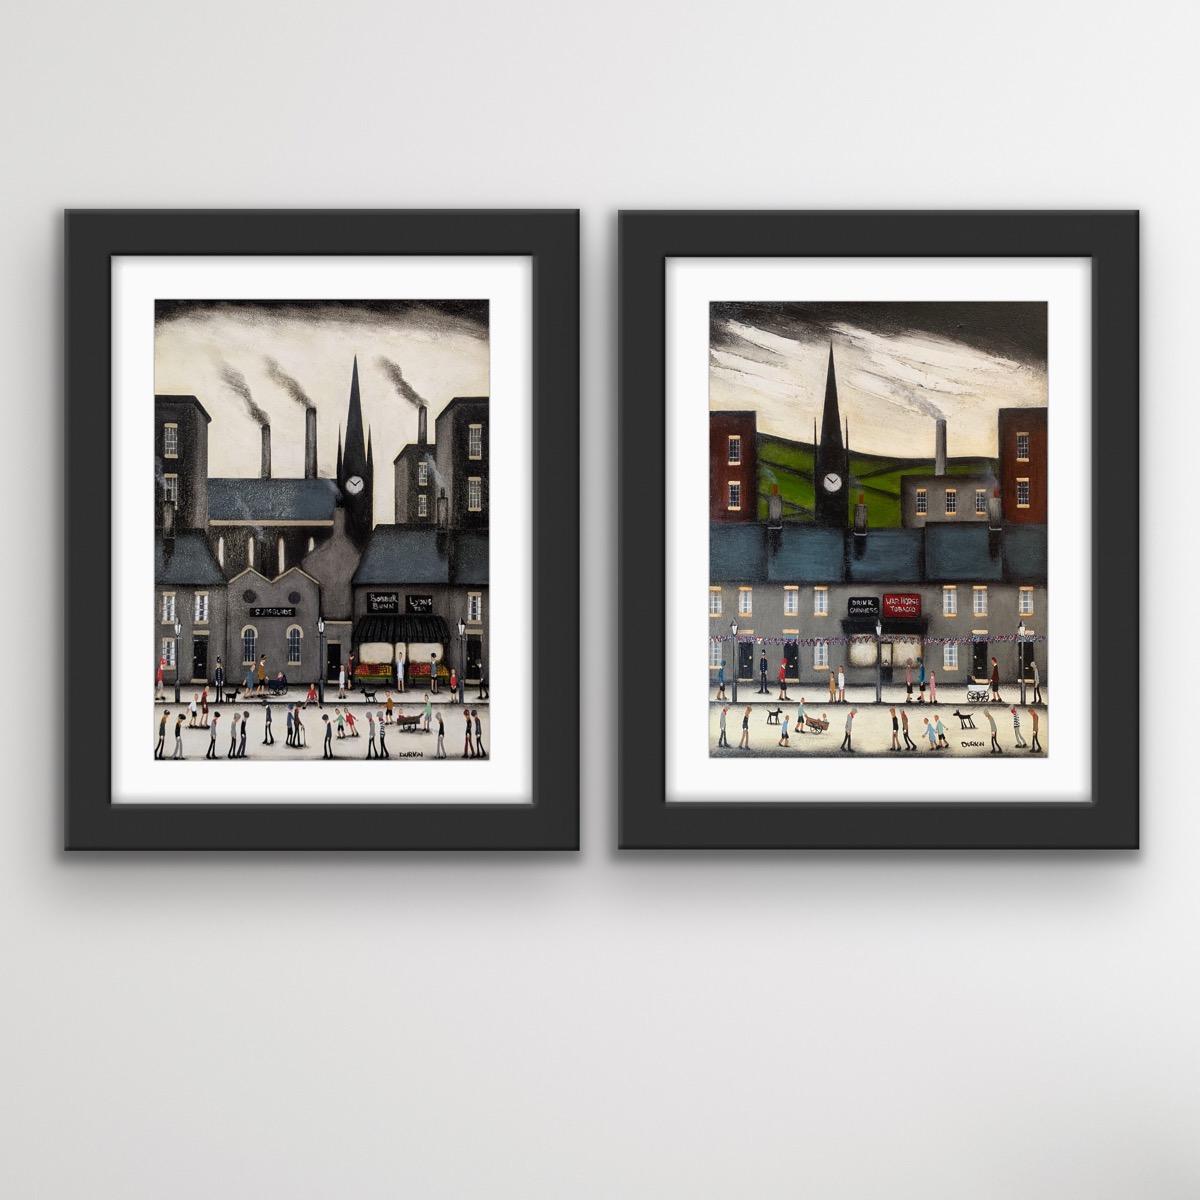 Peinture de style Lowry VI « Market Day and Bustling Street » (marché et rue animée), paysage urbain industriel